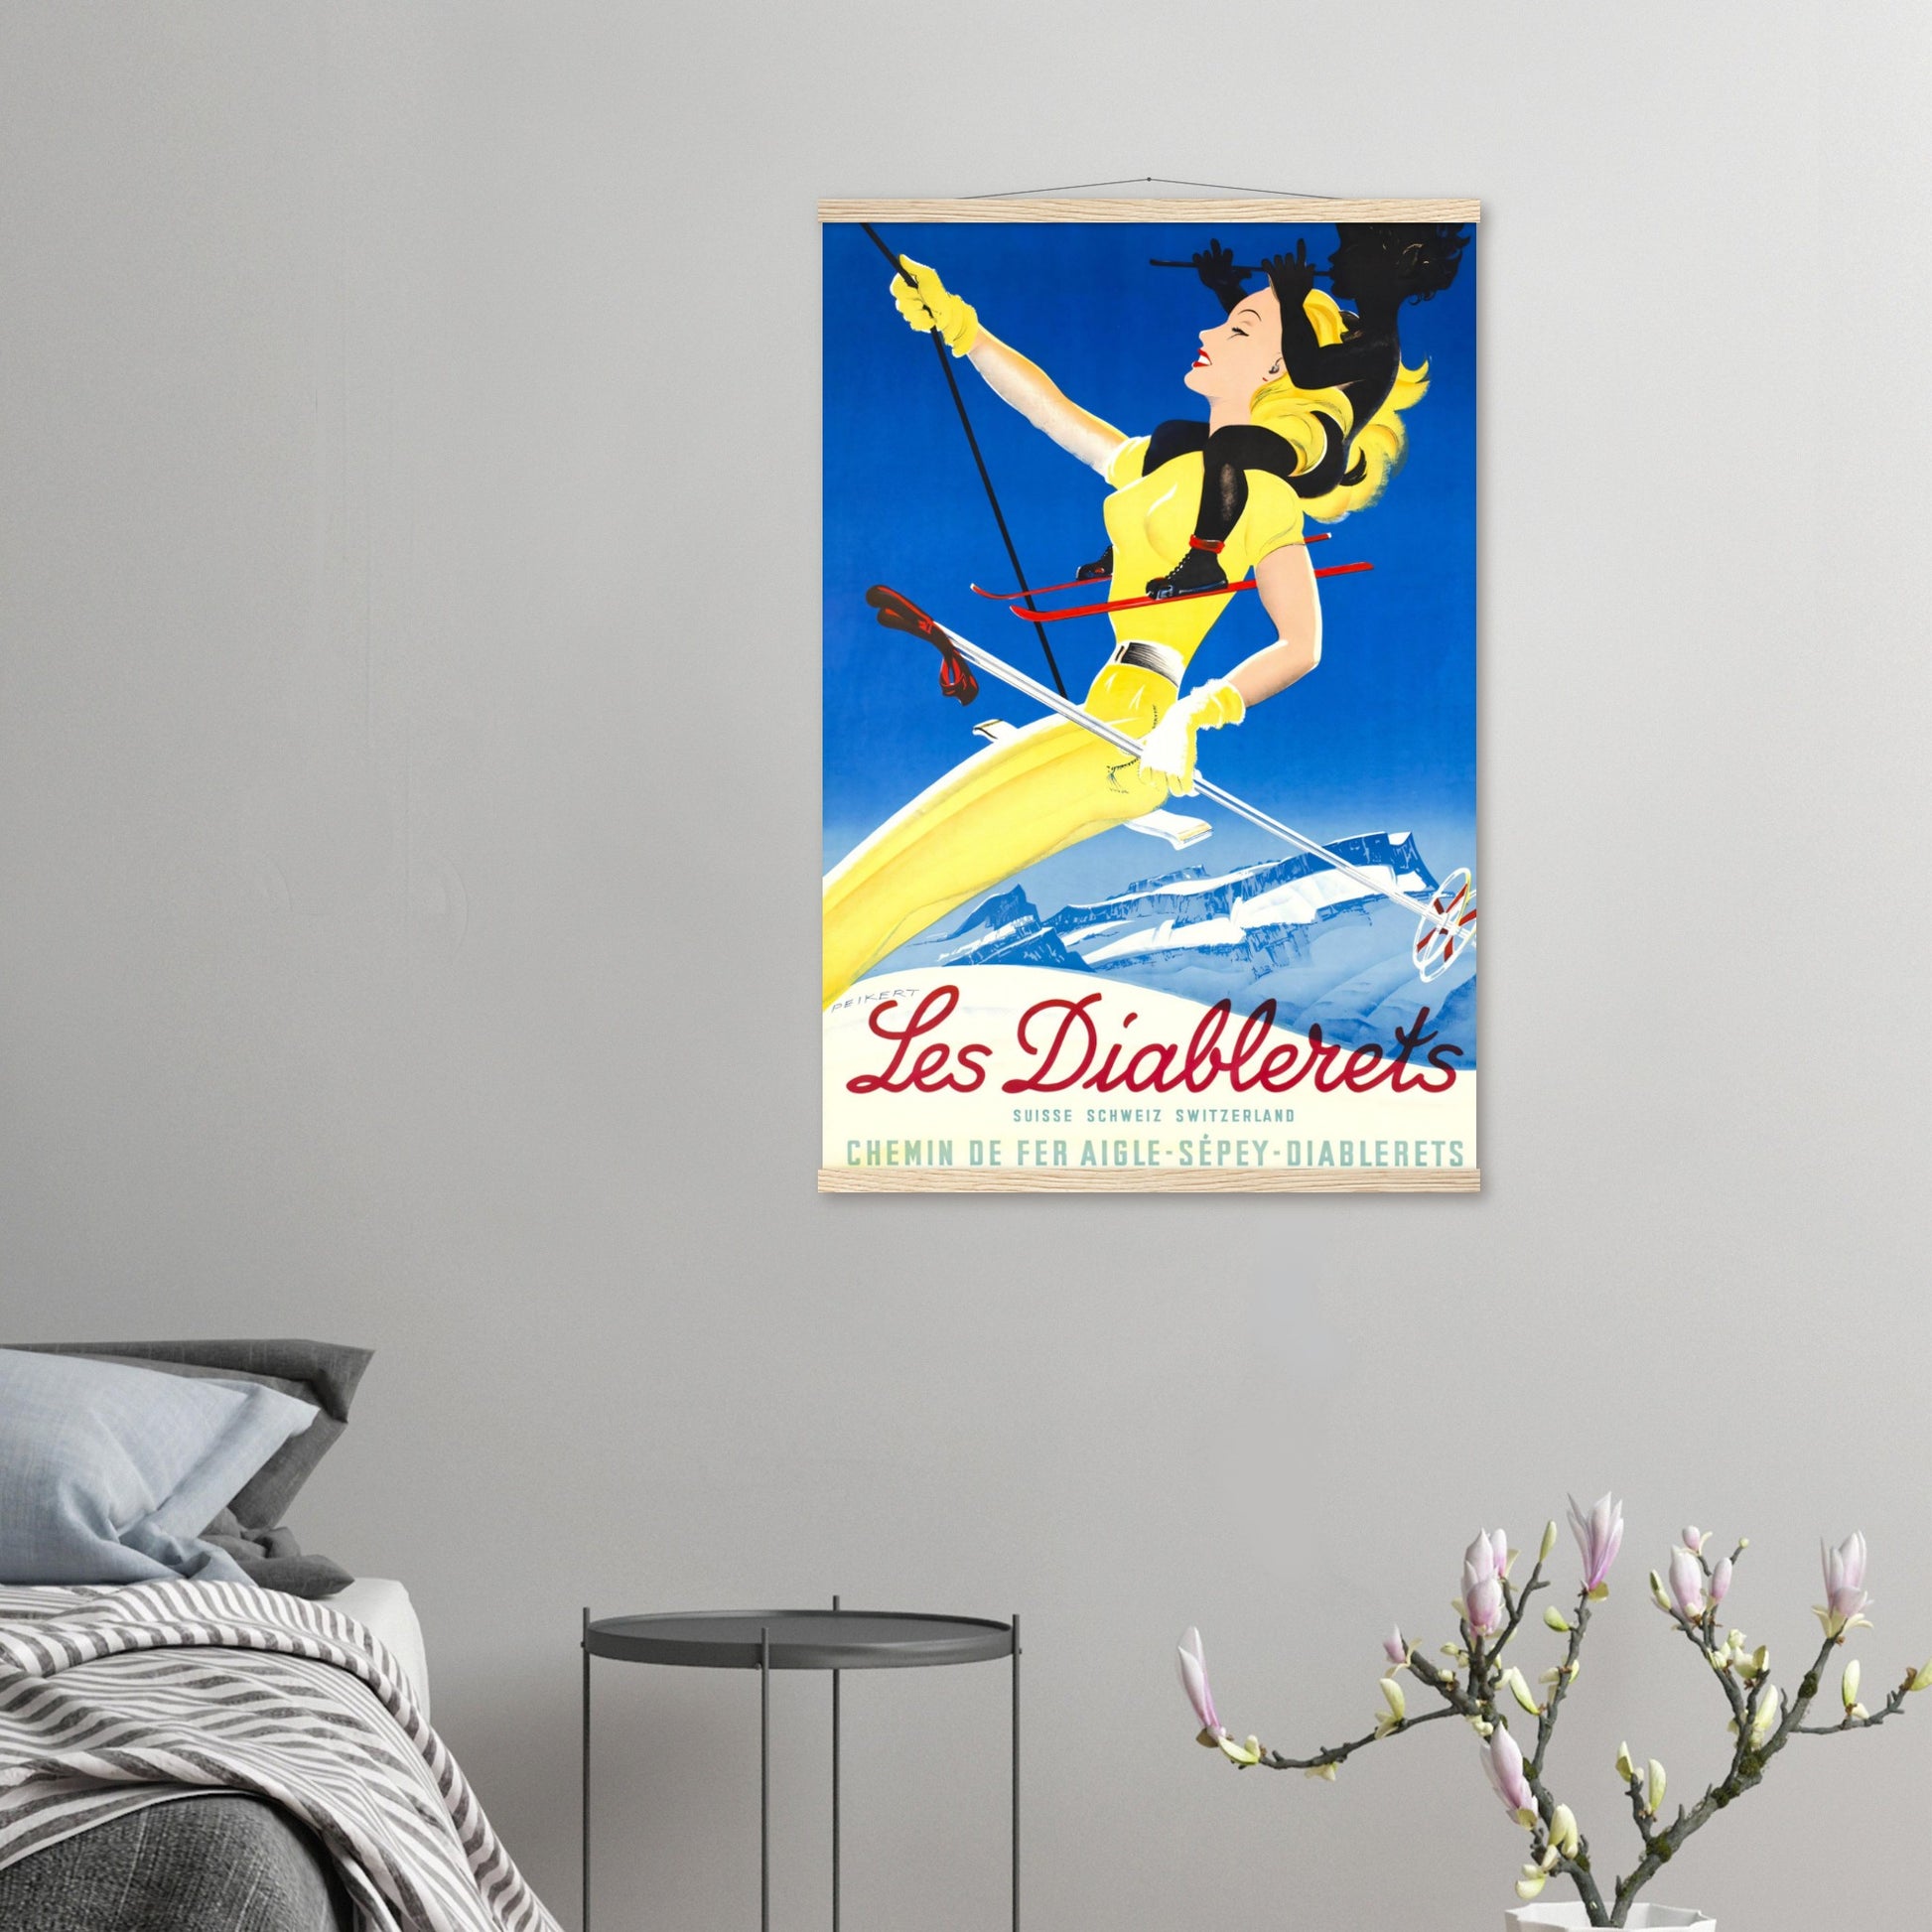 Vintage Poster Reprint, Les Diablerets, Wall Art on Premium Paper - Posterify